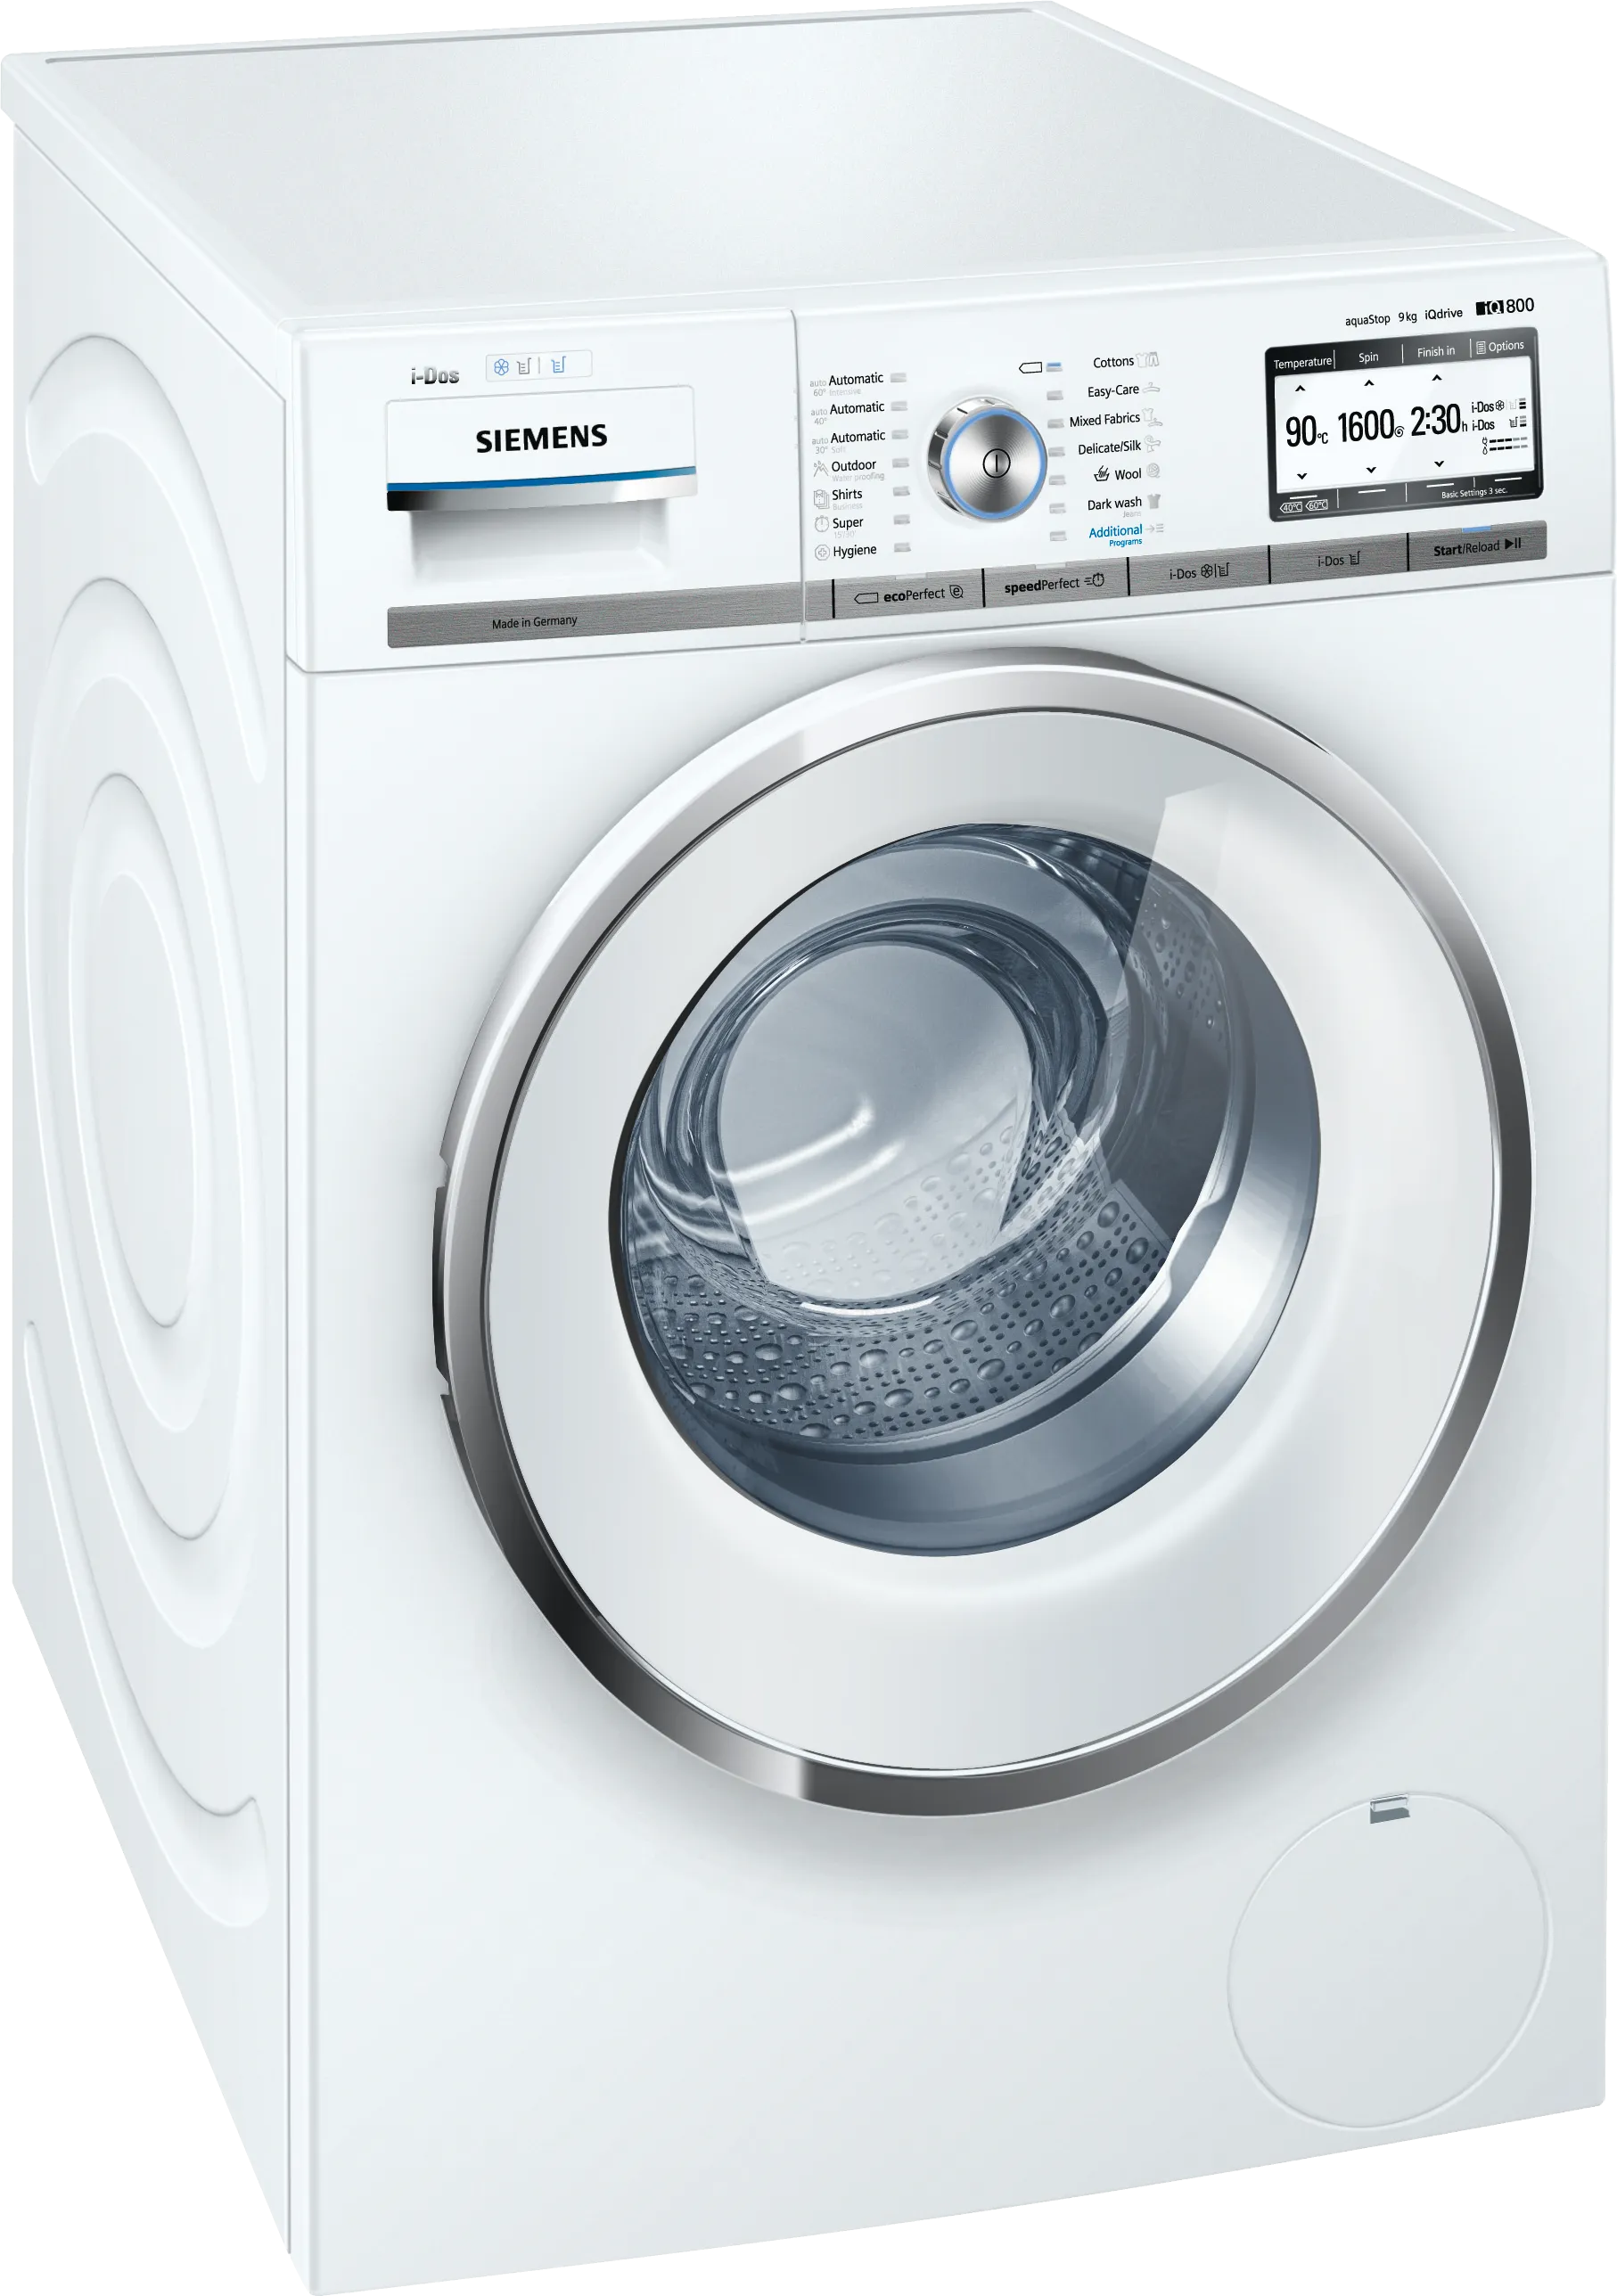 iQ800 washing machine, frontloader fullsize 9 kg 1600 rpm 